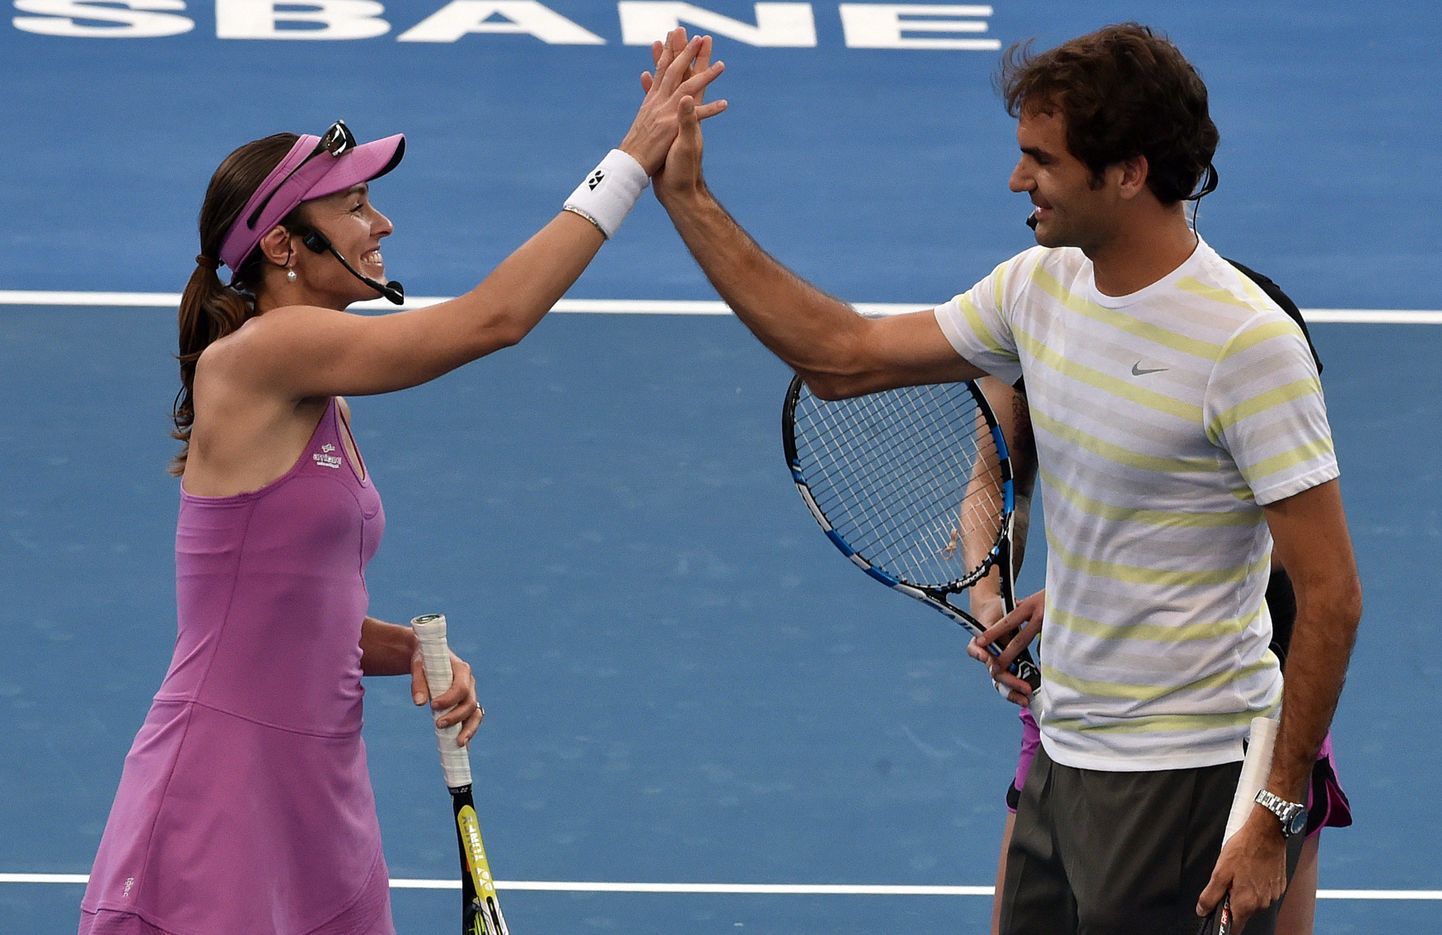 Roger Federer ja Martina Hingis jaanuaris Brisbane'is peetud näidismatšis. Viimati olid nad päris turniiril koos 2001. aastal.